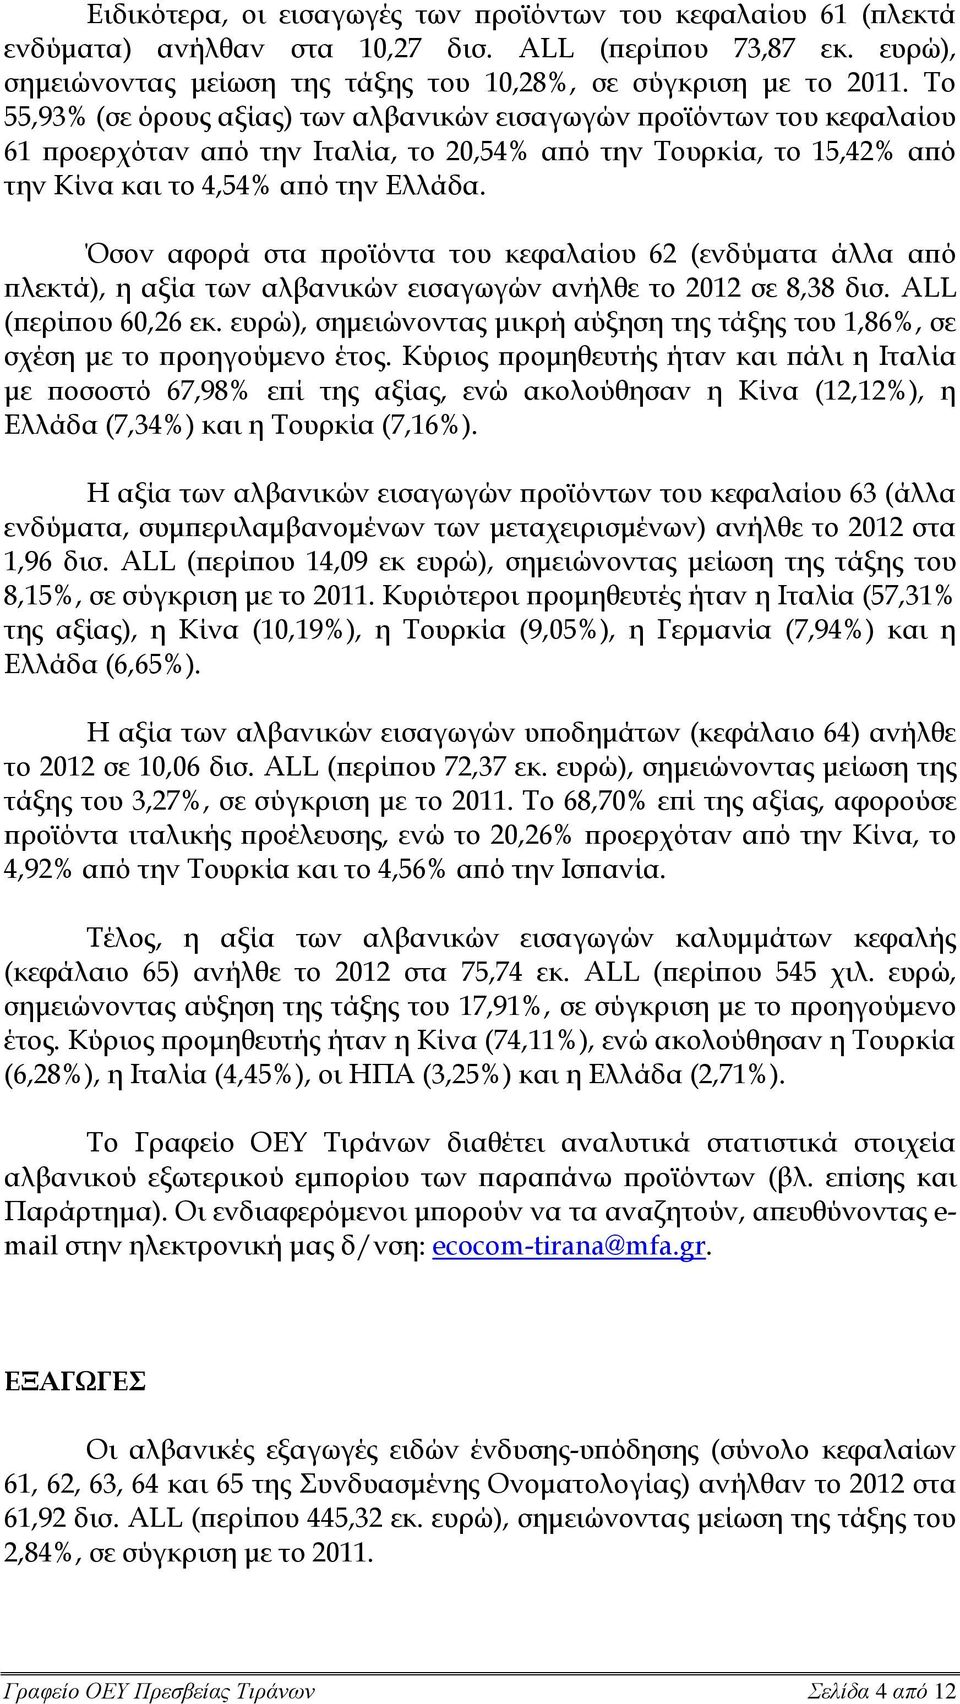 Όσον αφορά στα προϊόντα του κεφαλαίου 62 (ενδύματα άλλα από πλεκτά), η αξία των αλβανικών εισαγωγών ανήλθε το 2012 σε 8,38 δισ. ALL (περίπου 60,26 εκ.